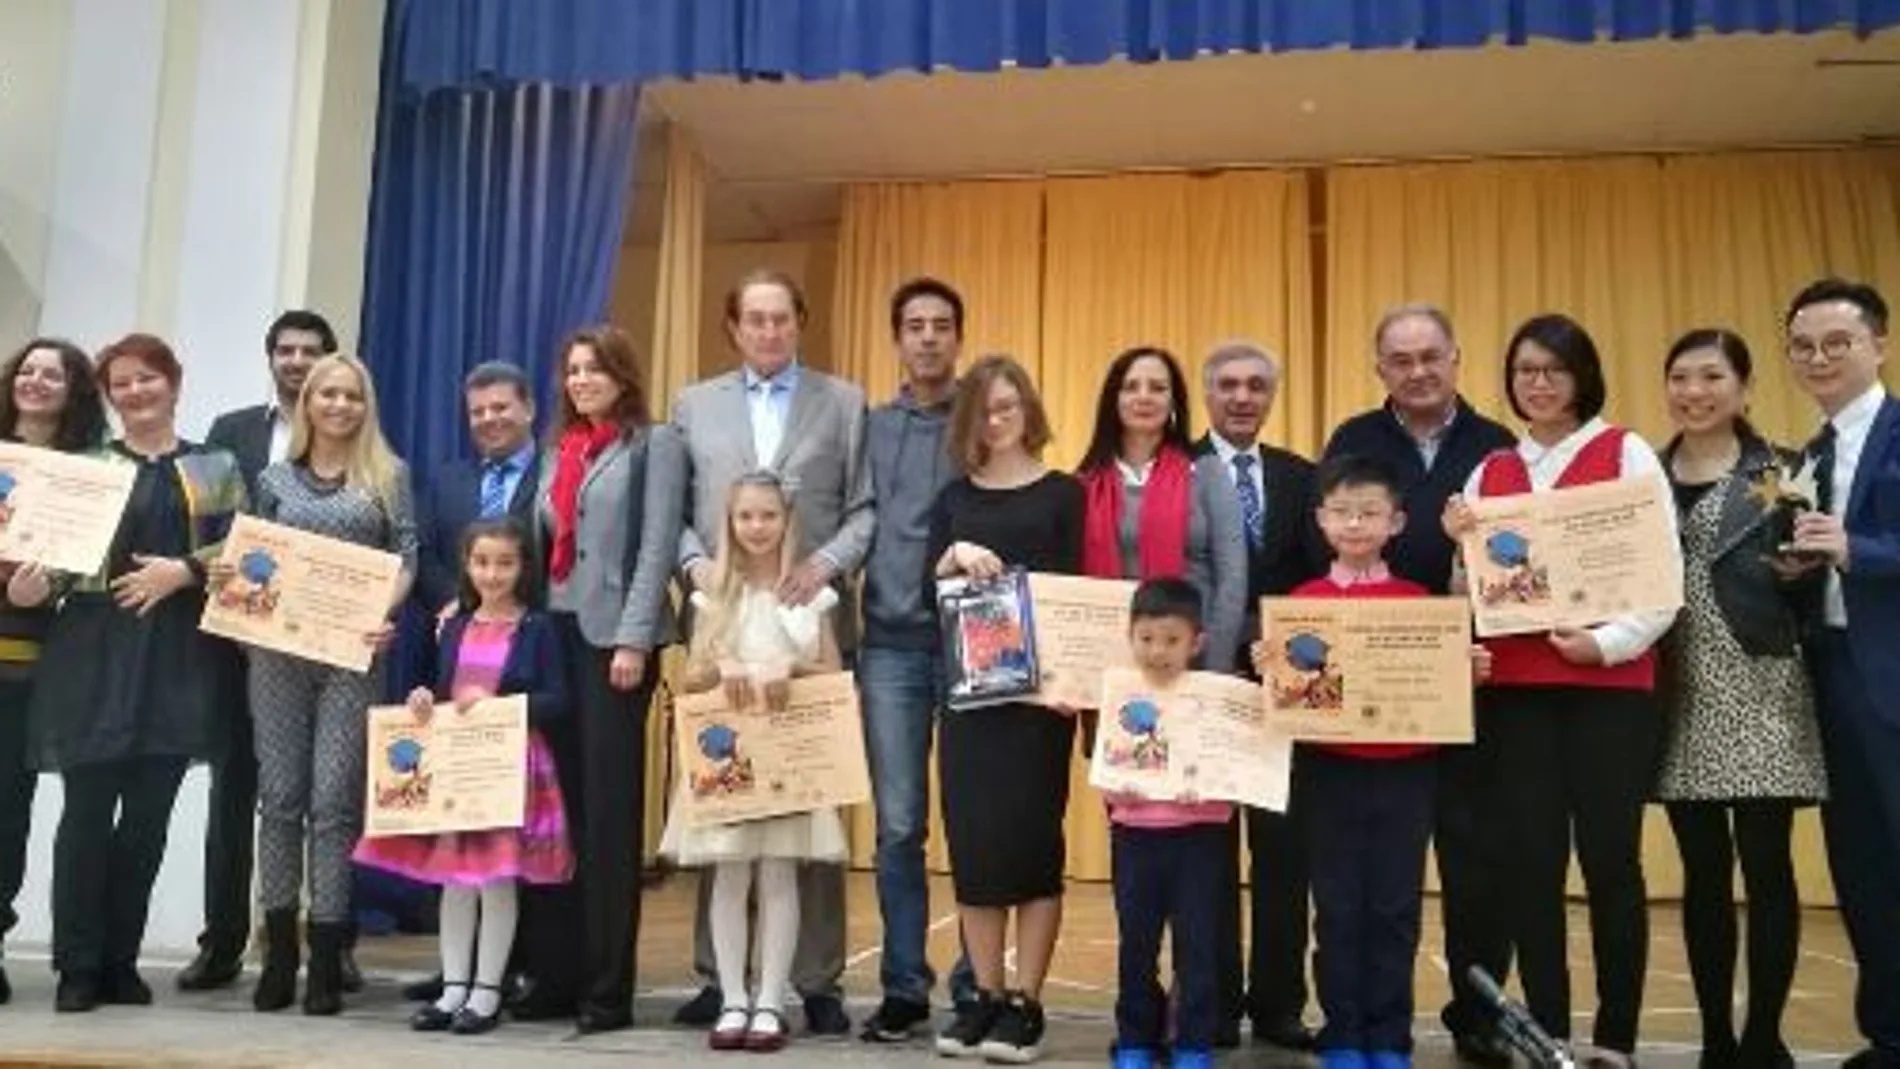 Foto de familia de los premiados y familiares en la ciudad de Pafos (Chipre) con sus respectivos Diplomas acompañados del Presidente de la ONG española Paz y Cooperación don Joaquín Antuña.